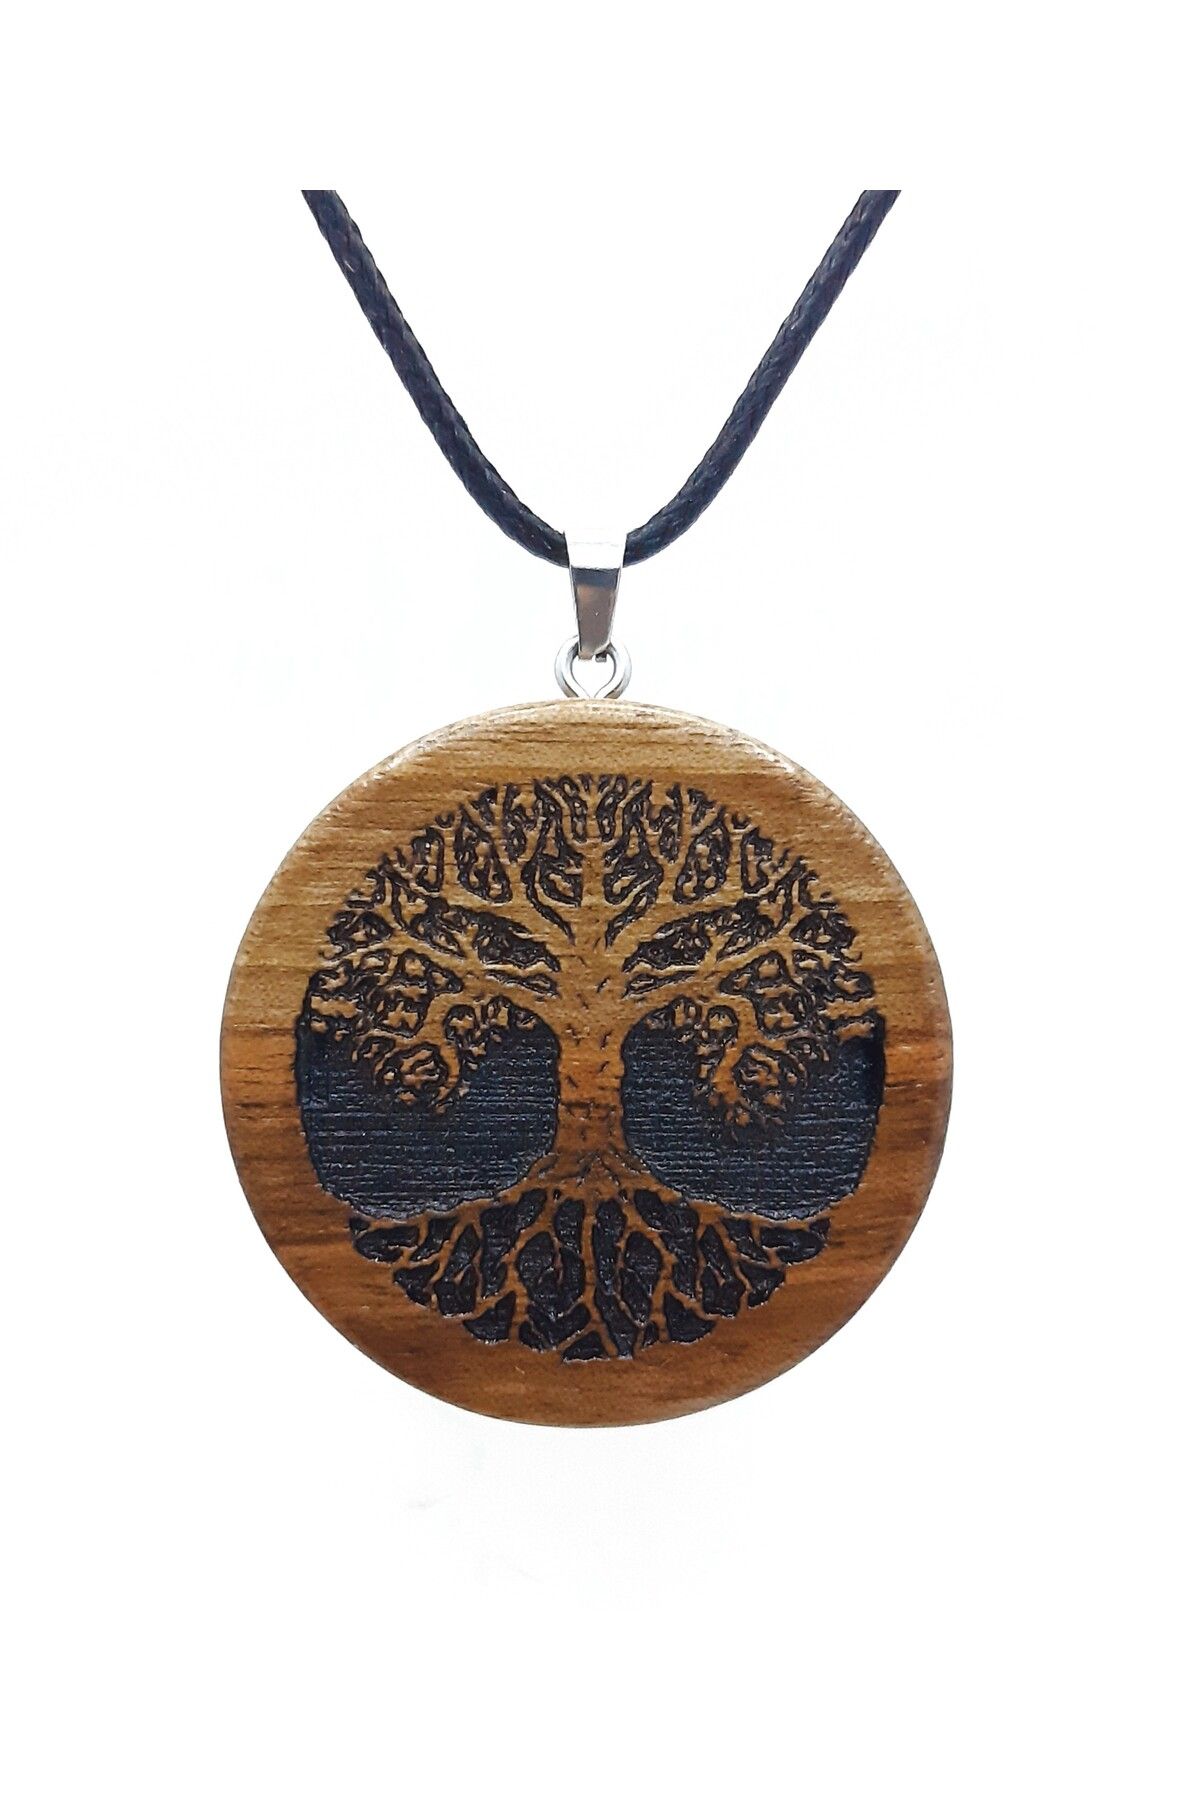 Sinerium Design İsme Özel El Yapımı Ahşap Hayat Ağacı Kolye, Hayat Ağacı, Yaşam Ağacı, Kişiye Özel Hediye, Kelt